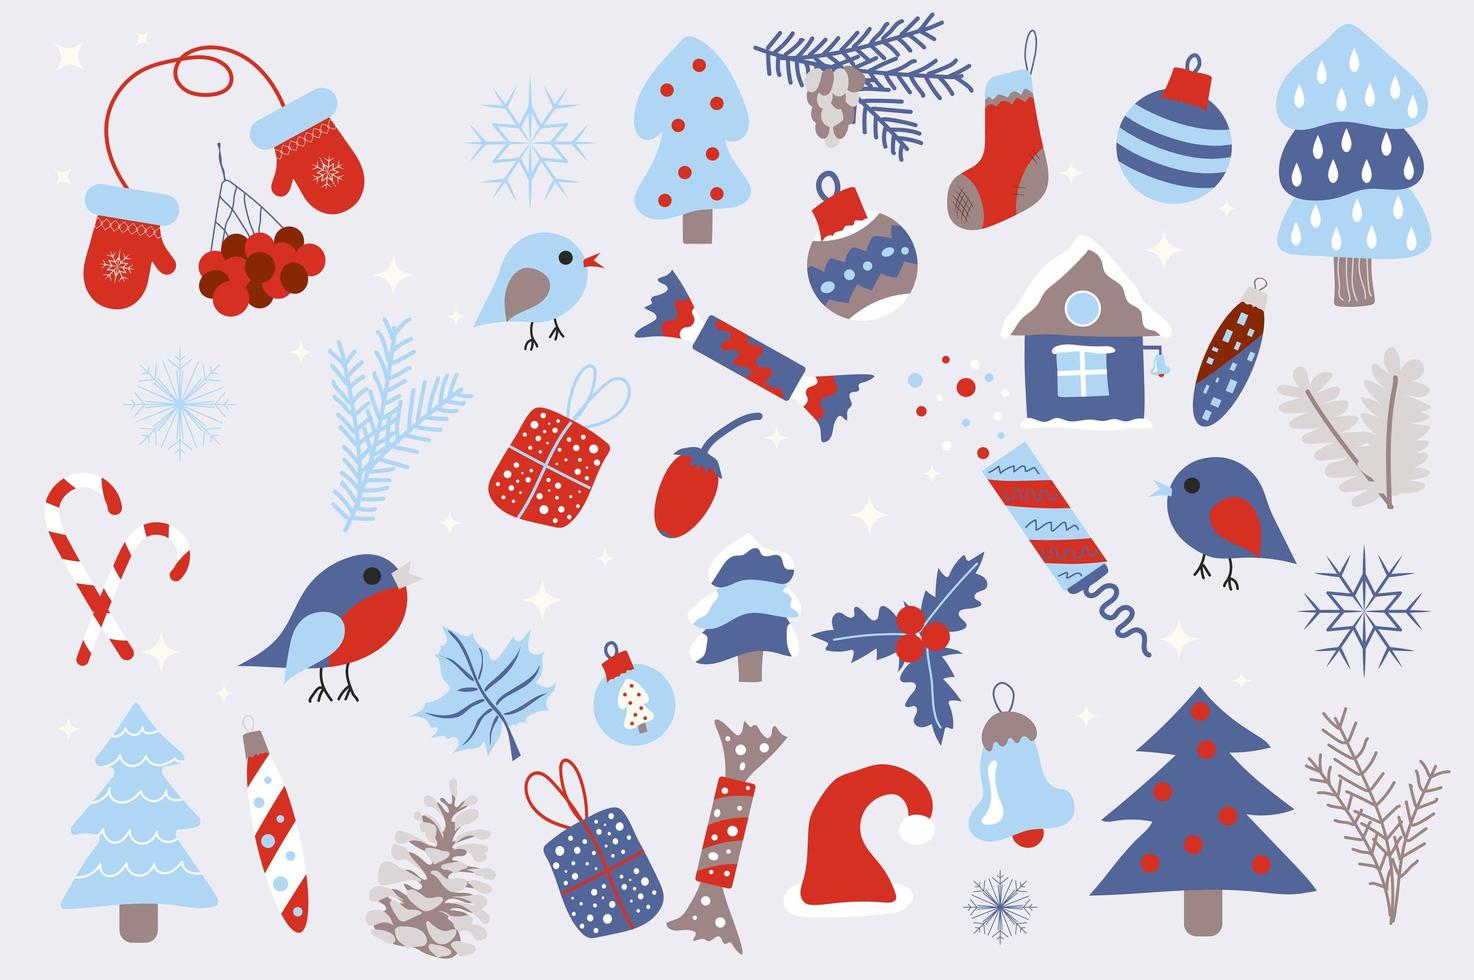 jul och vinter semester isolerade element set. samling av vantar, rönn, fågel, träd, gran, bula, strumpa, godis, leksaker och annat. julkompositioner. vektor illustration i platt tecknad design